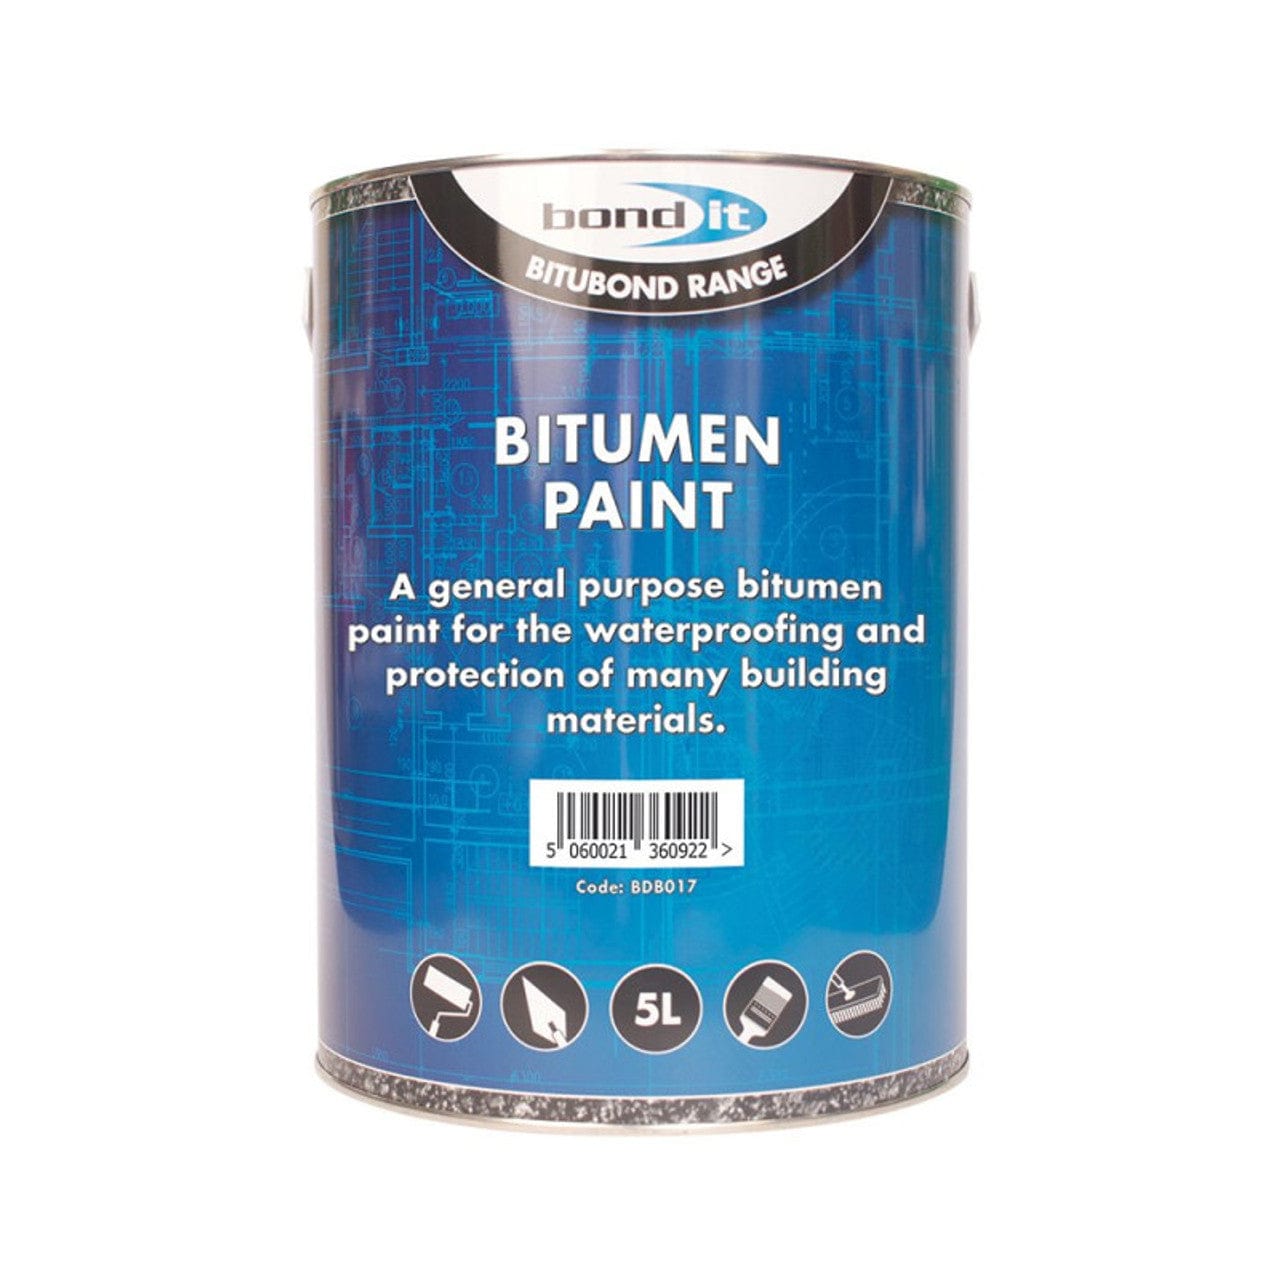 Bitumen Paint 5Ltr (Bond-It)